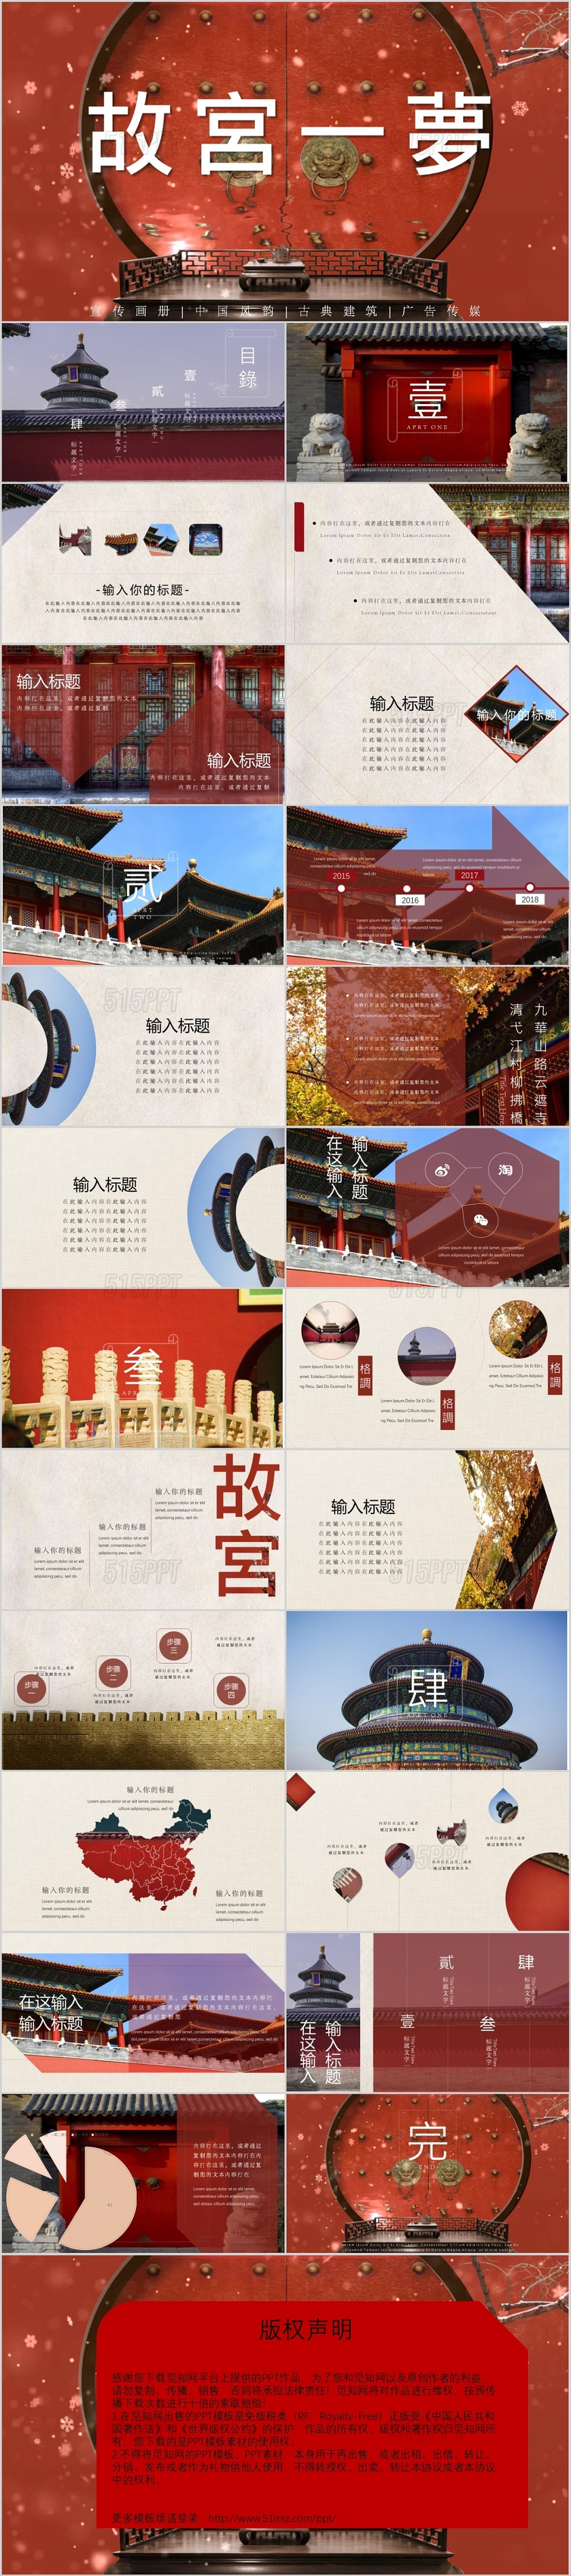 红色中国风故宫一梦画册建筑PPT模板